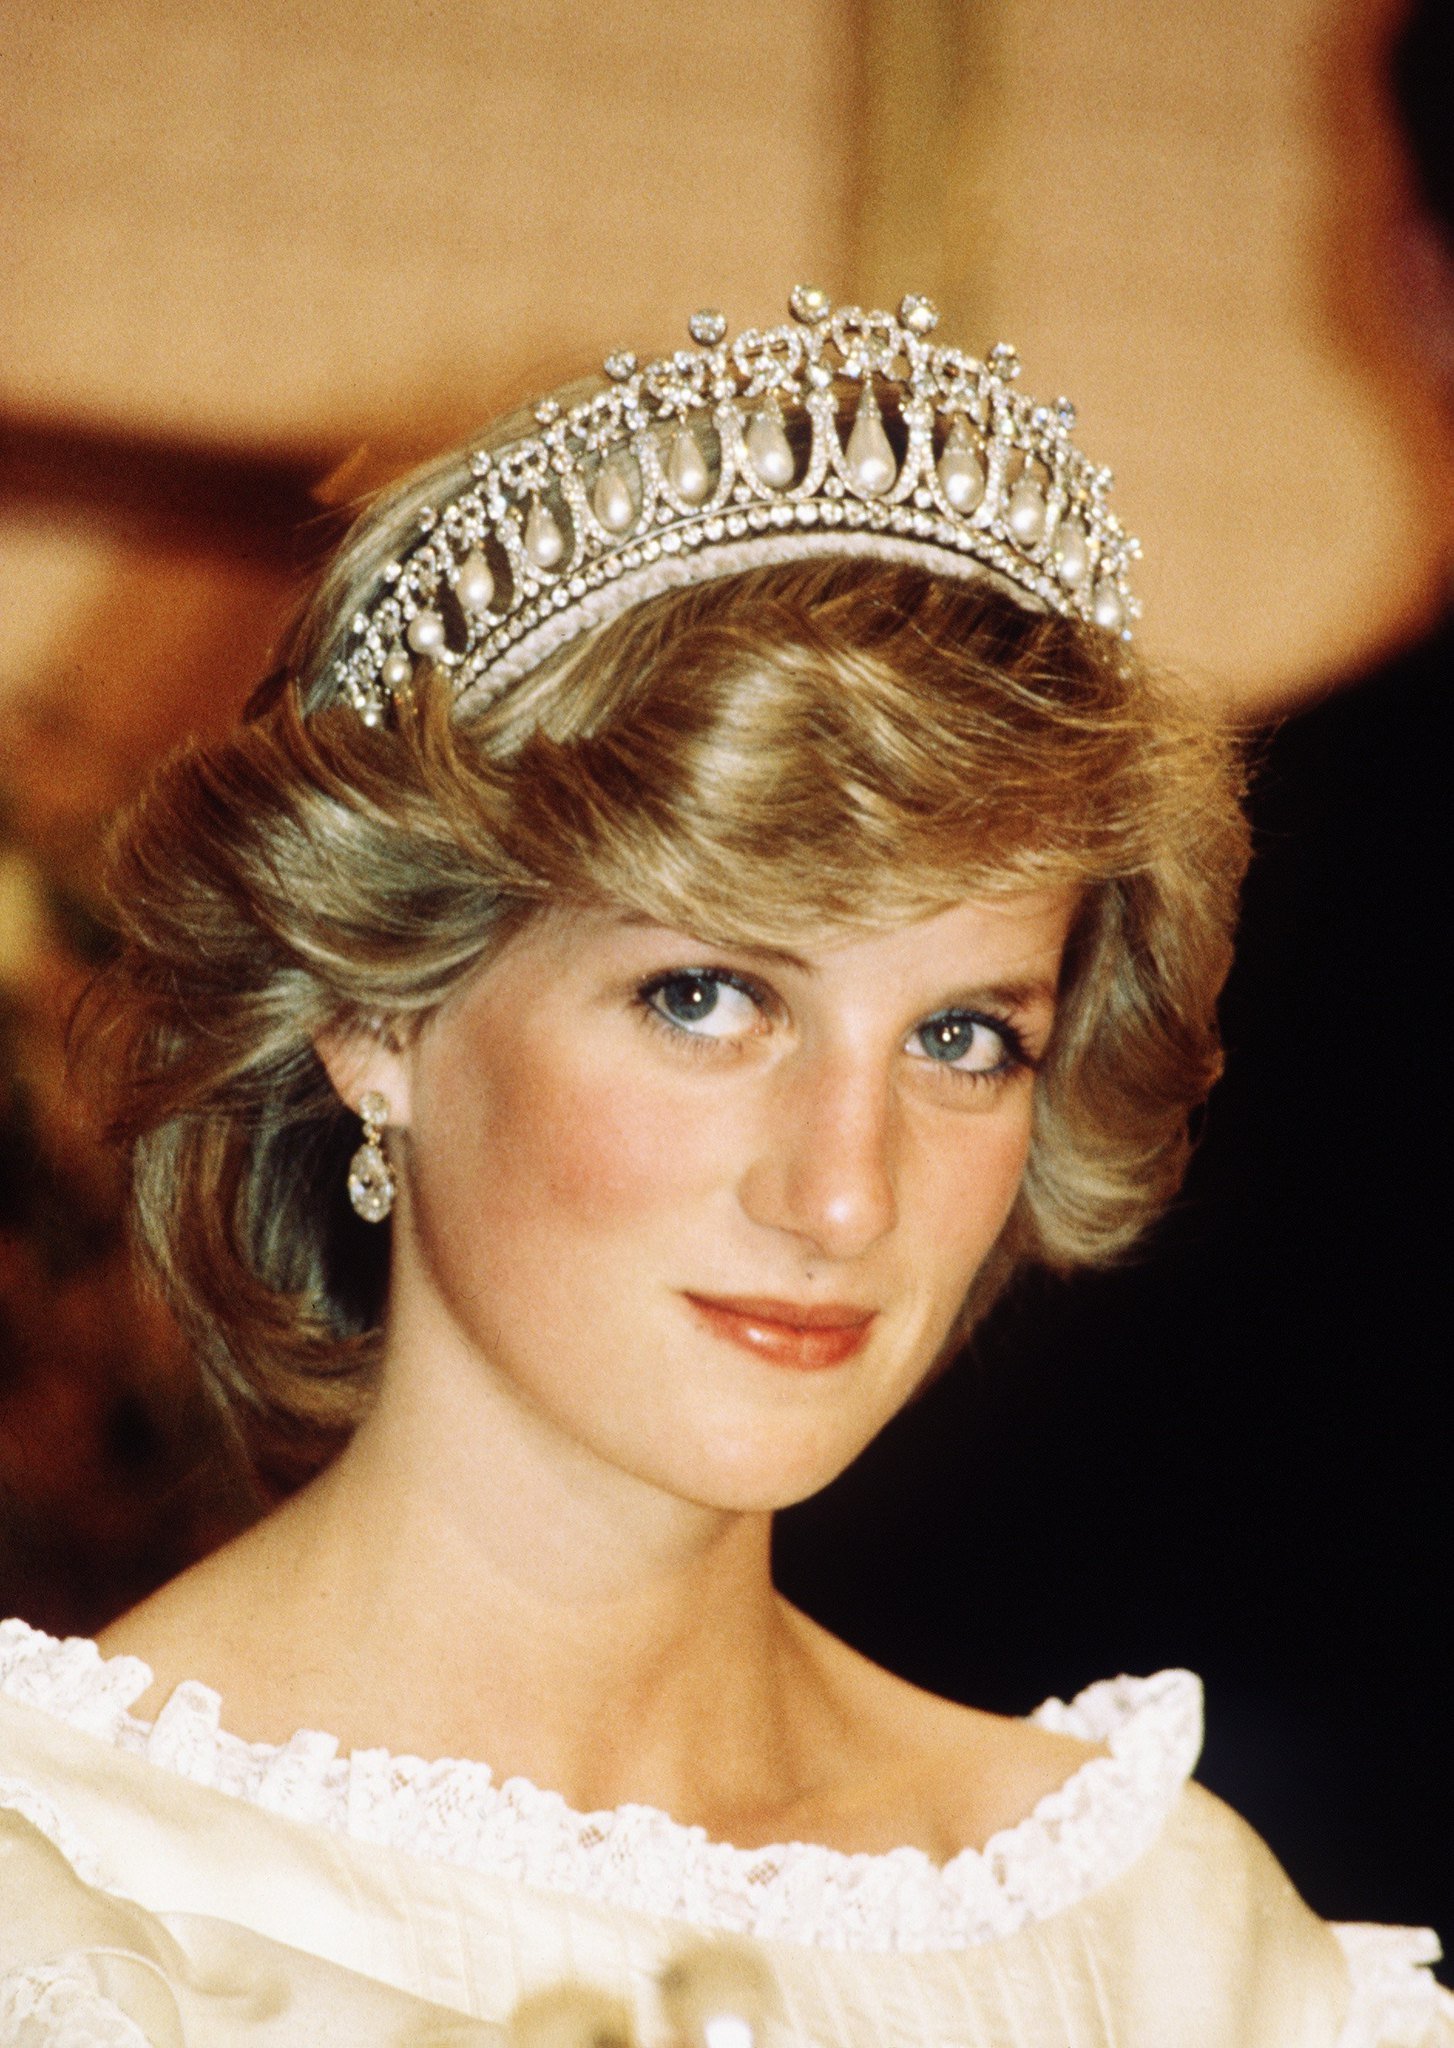 Diana de Gales, primera esposa del príncipe Charles, heredero de la corona británica. | Imagen: Flickr